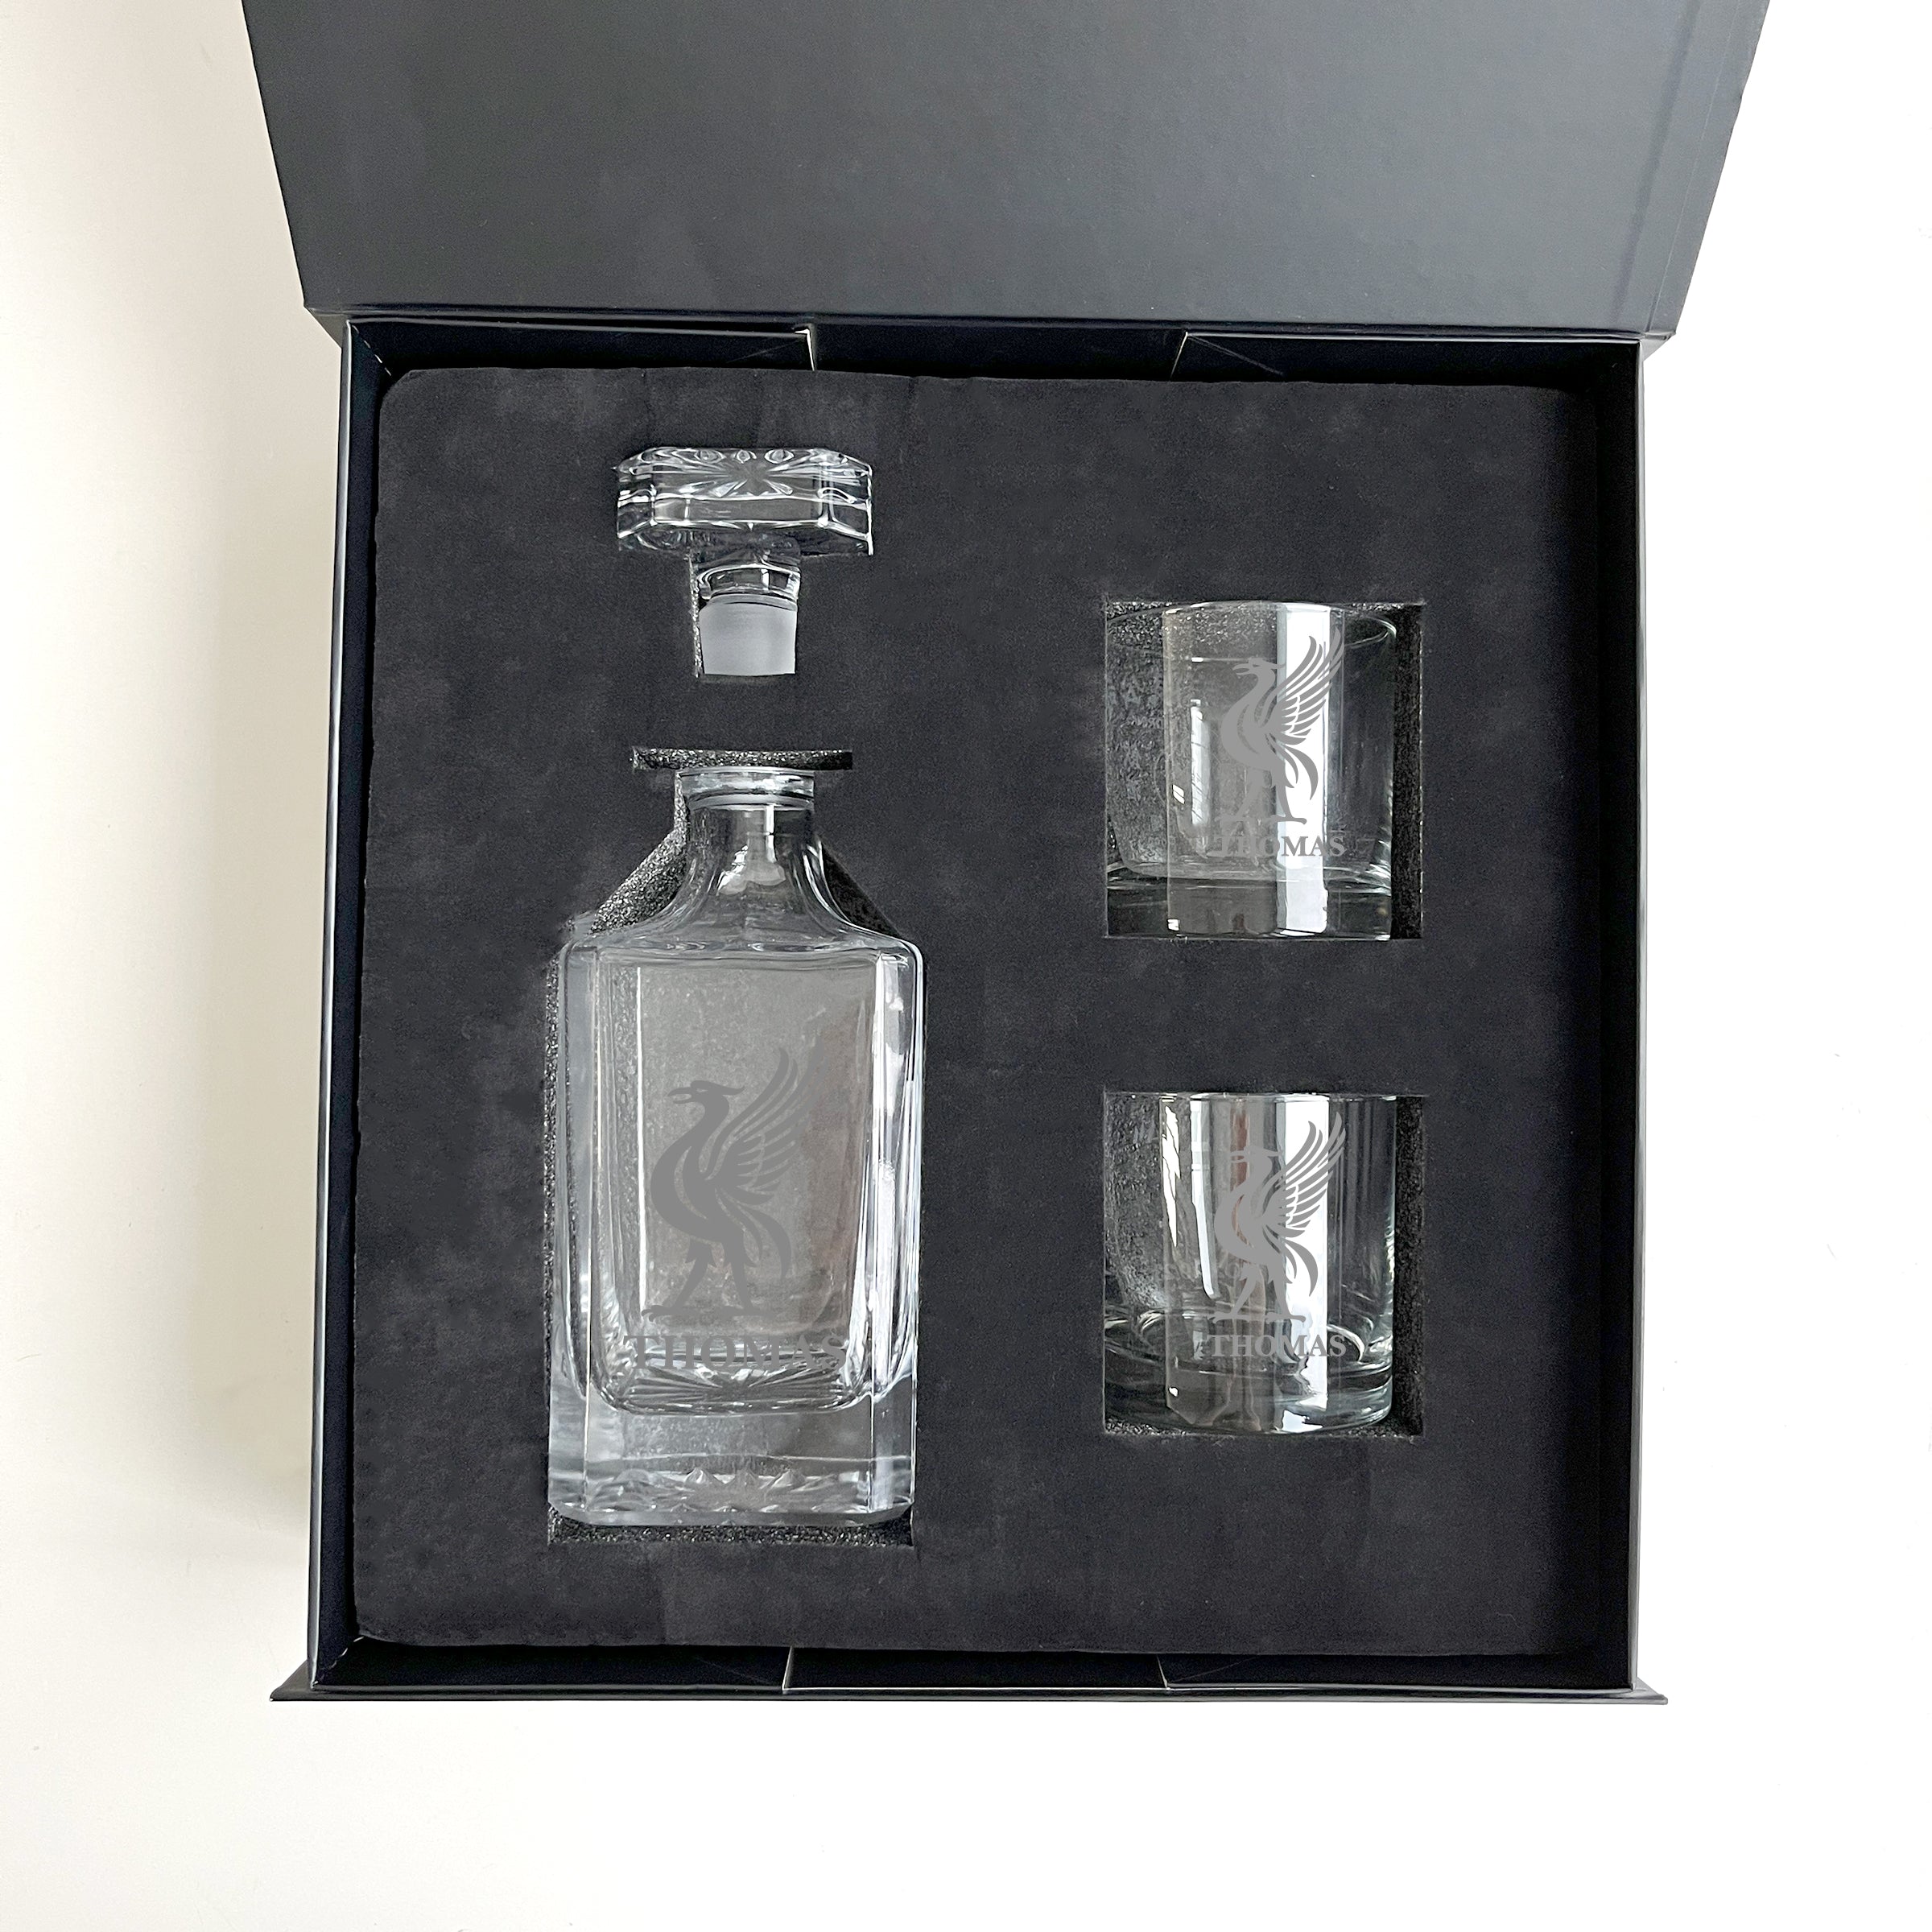 定制decanter set| 定制球隊Whisky Decanter set DY01-122 - Design Your Own Wine